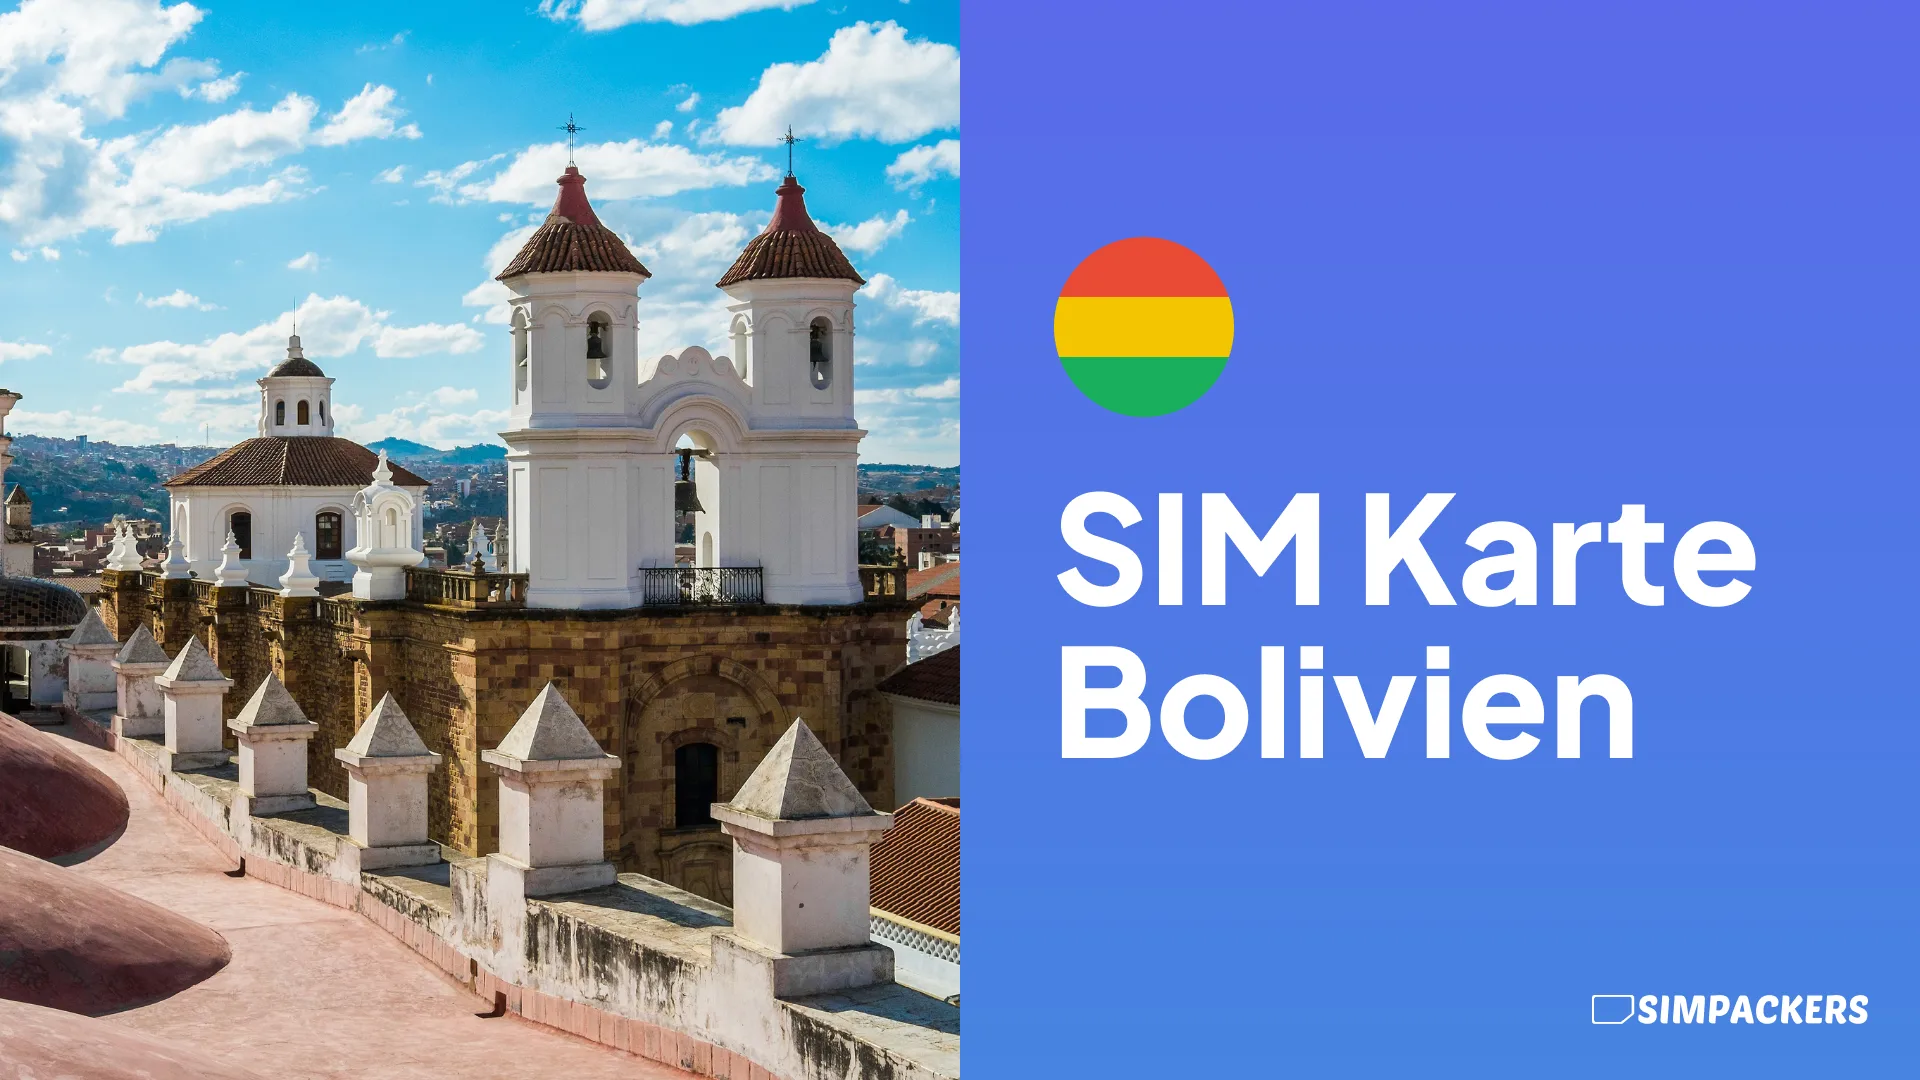 DE/FEATURED_IMAGES/sim-karte-bolivien.webp